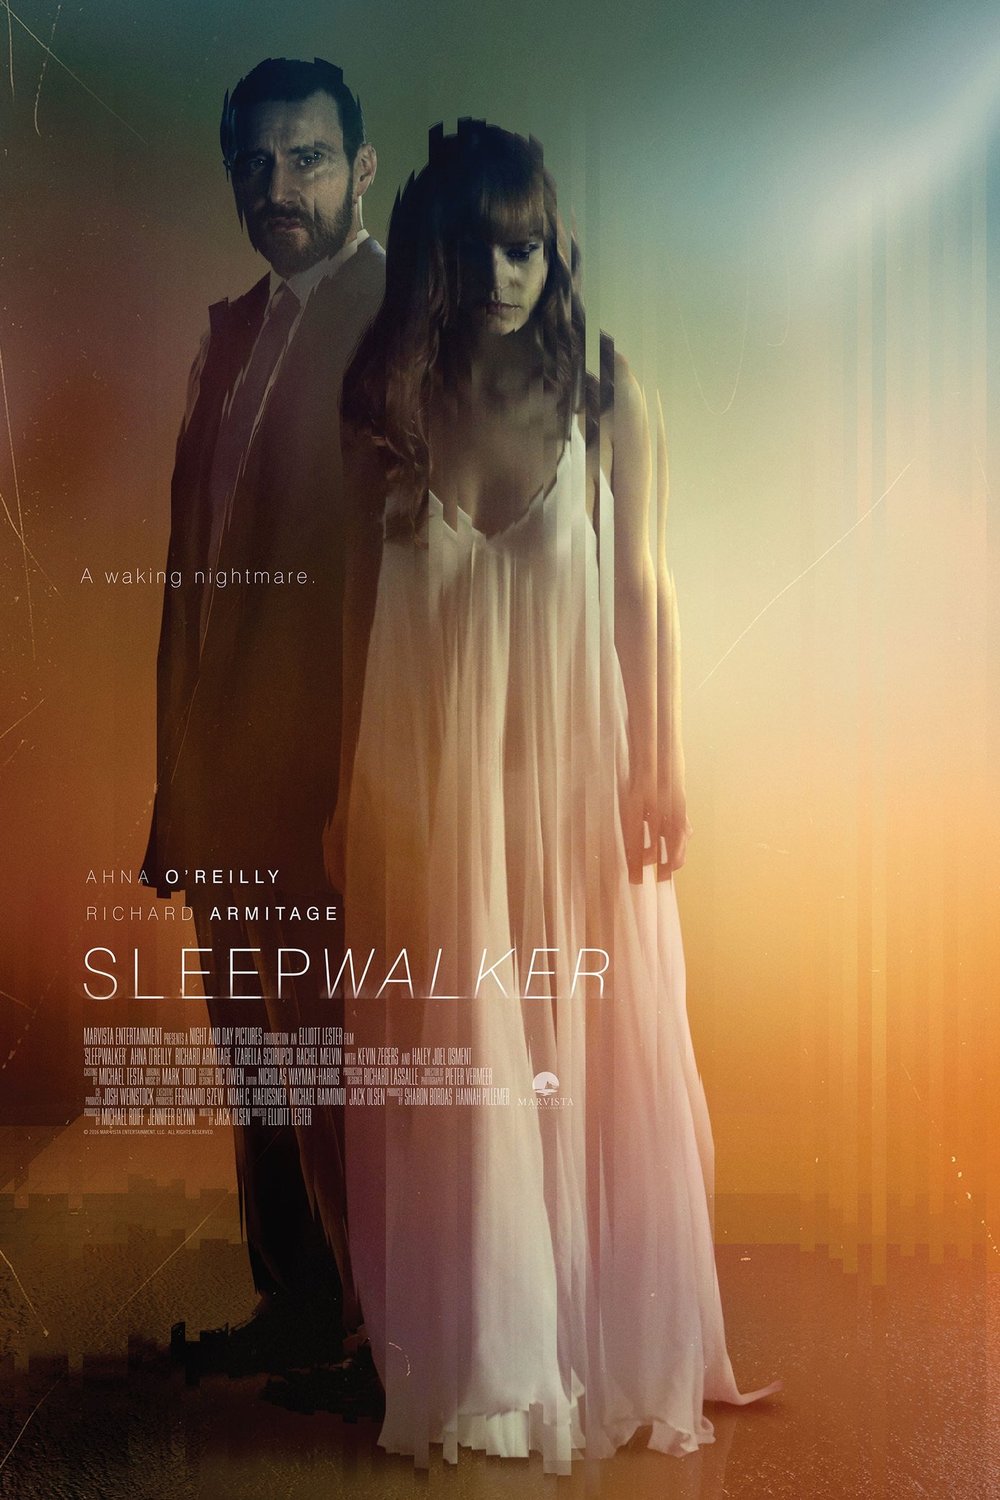 Poster of the movie Sleepwalker